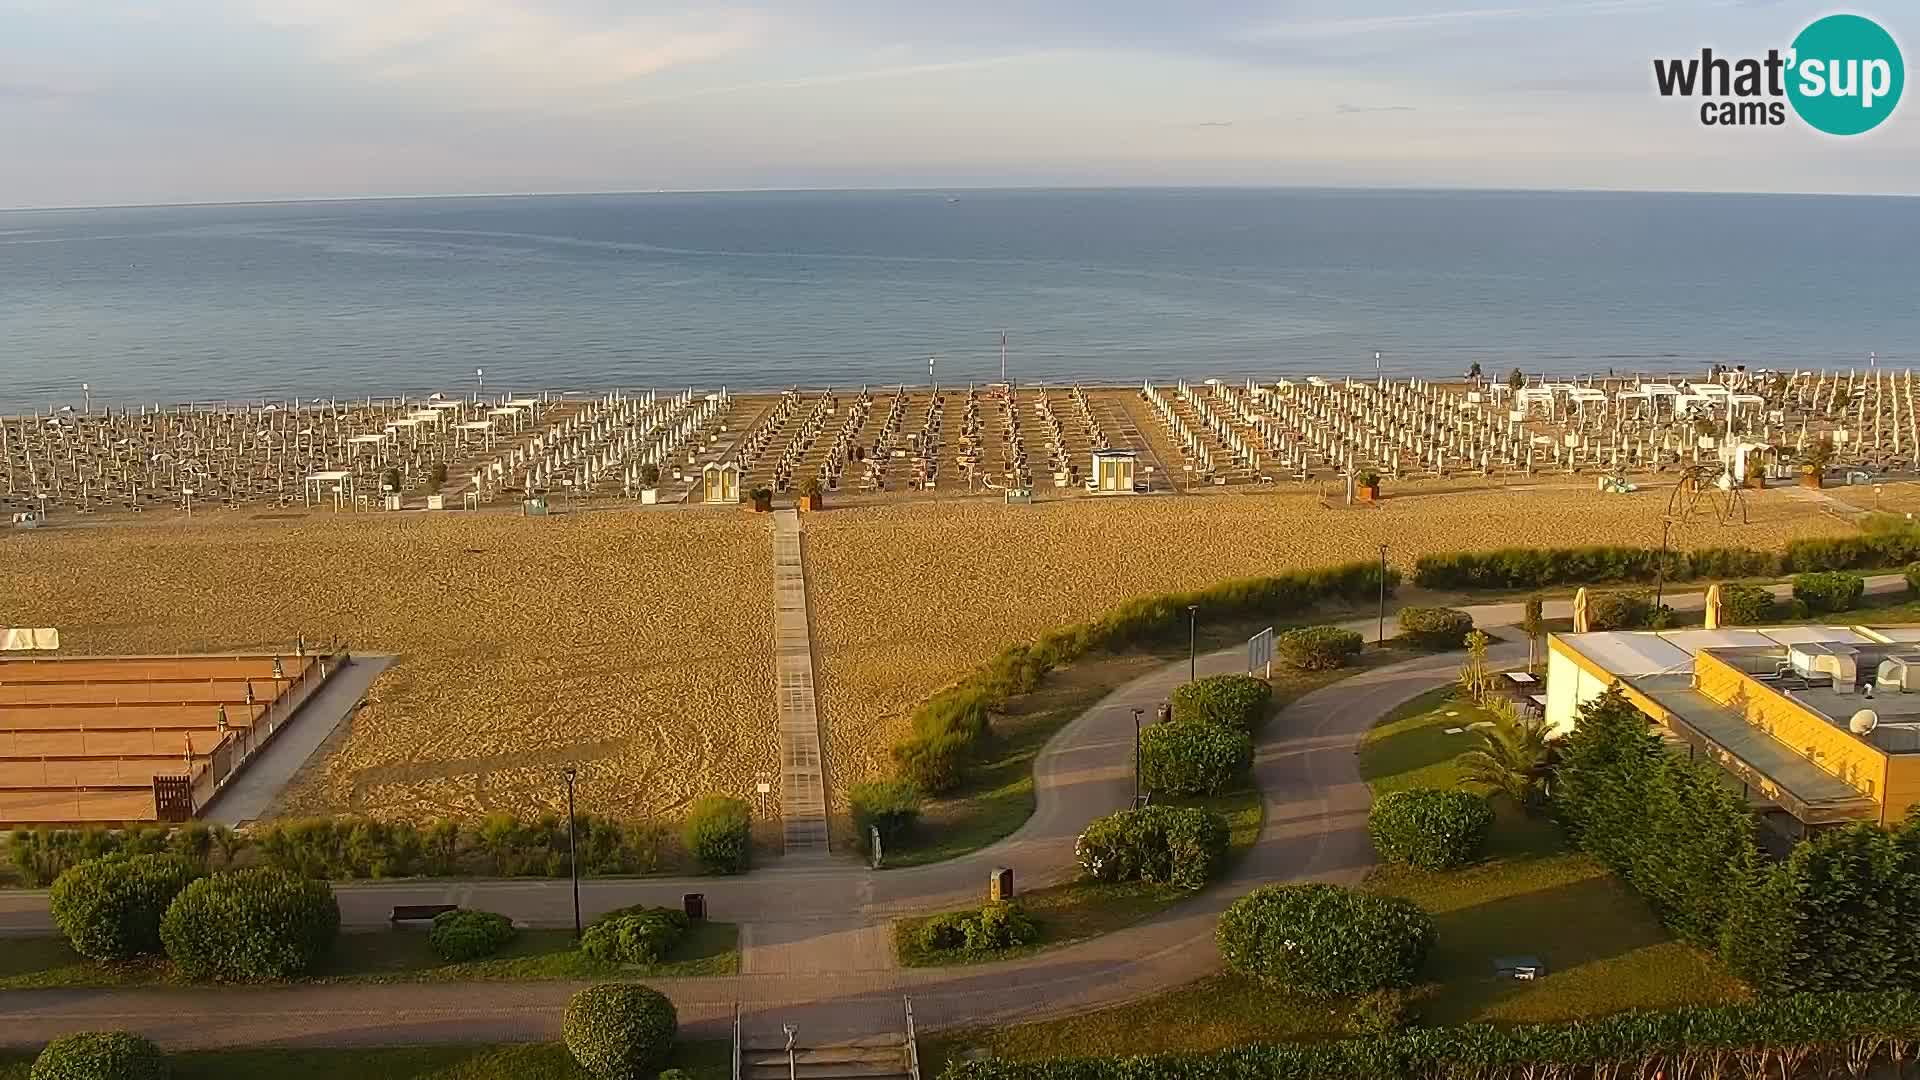 La spiaggia di Bibione webcam live e piazzale Zenit